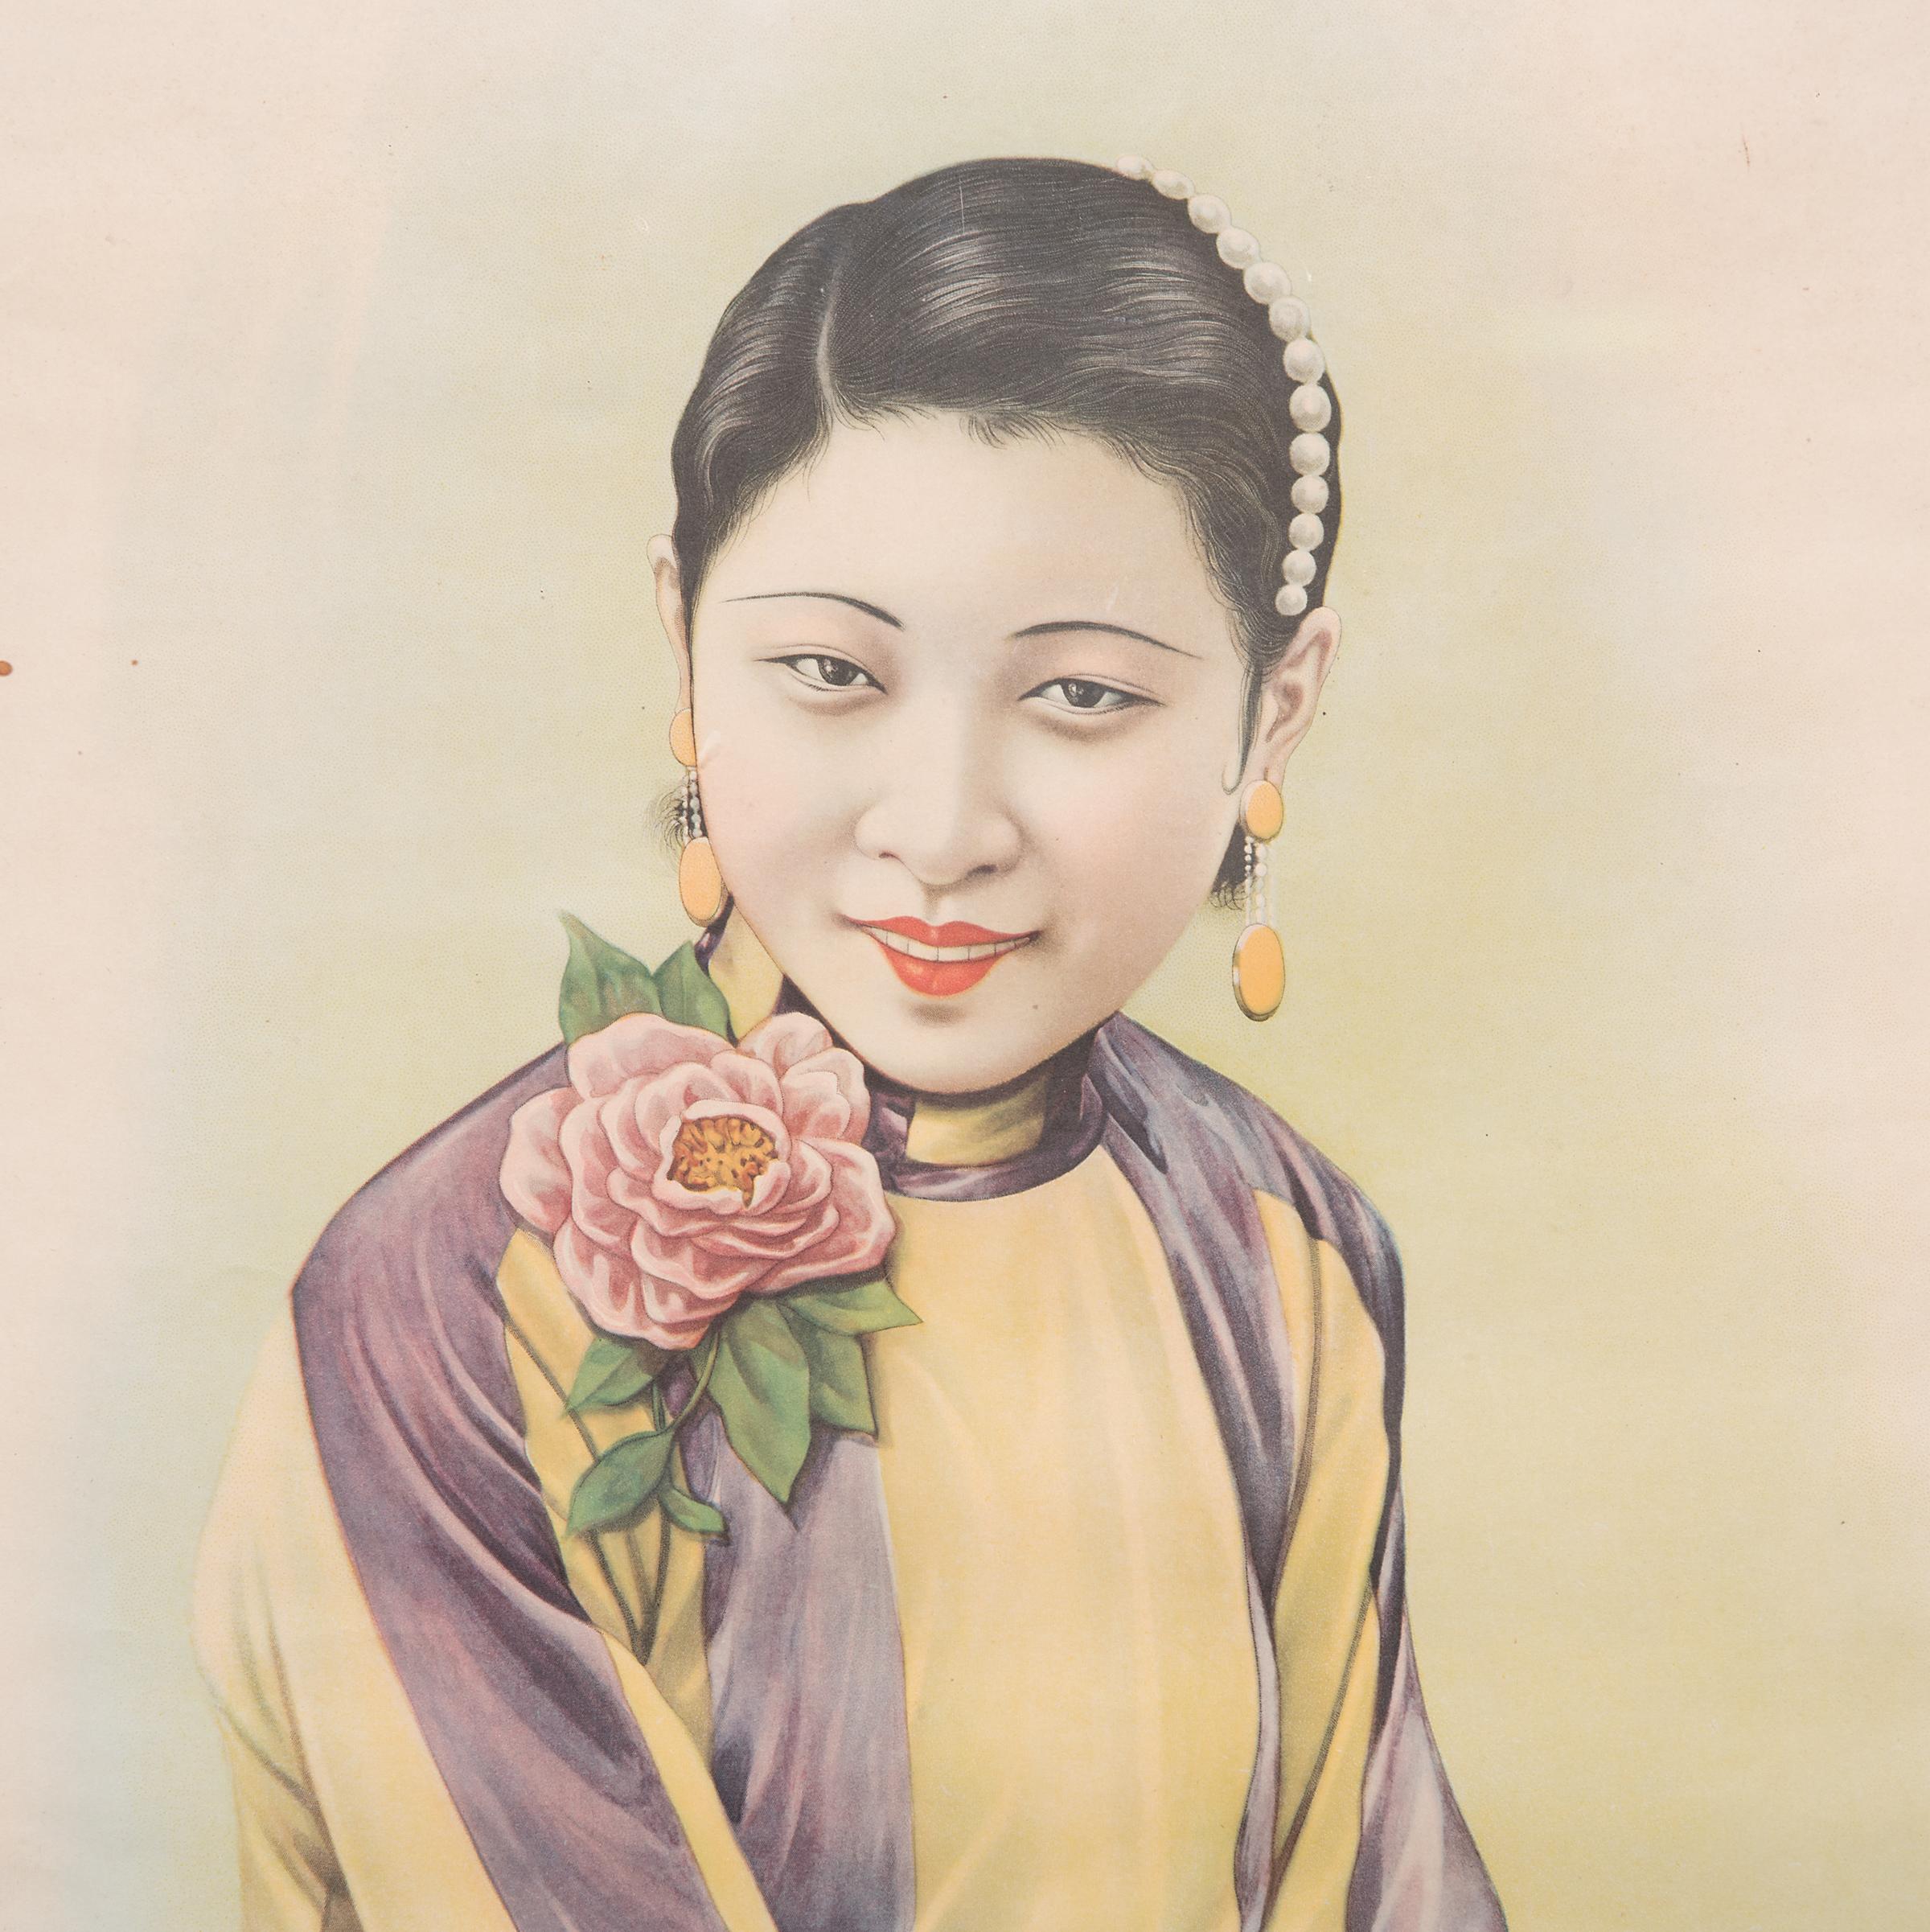 Dieses gerahmte Werbeplakat für Hatamen-Zigaretten aus den späten 1920er Jahren verbindet die Detailgenauigkeit der traditionellen chinesischen Malerei mit der Kunst der Farblithografie. Diese von der westlichen Art-Déco-Bewegung beeinflussten